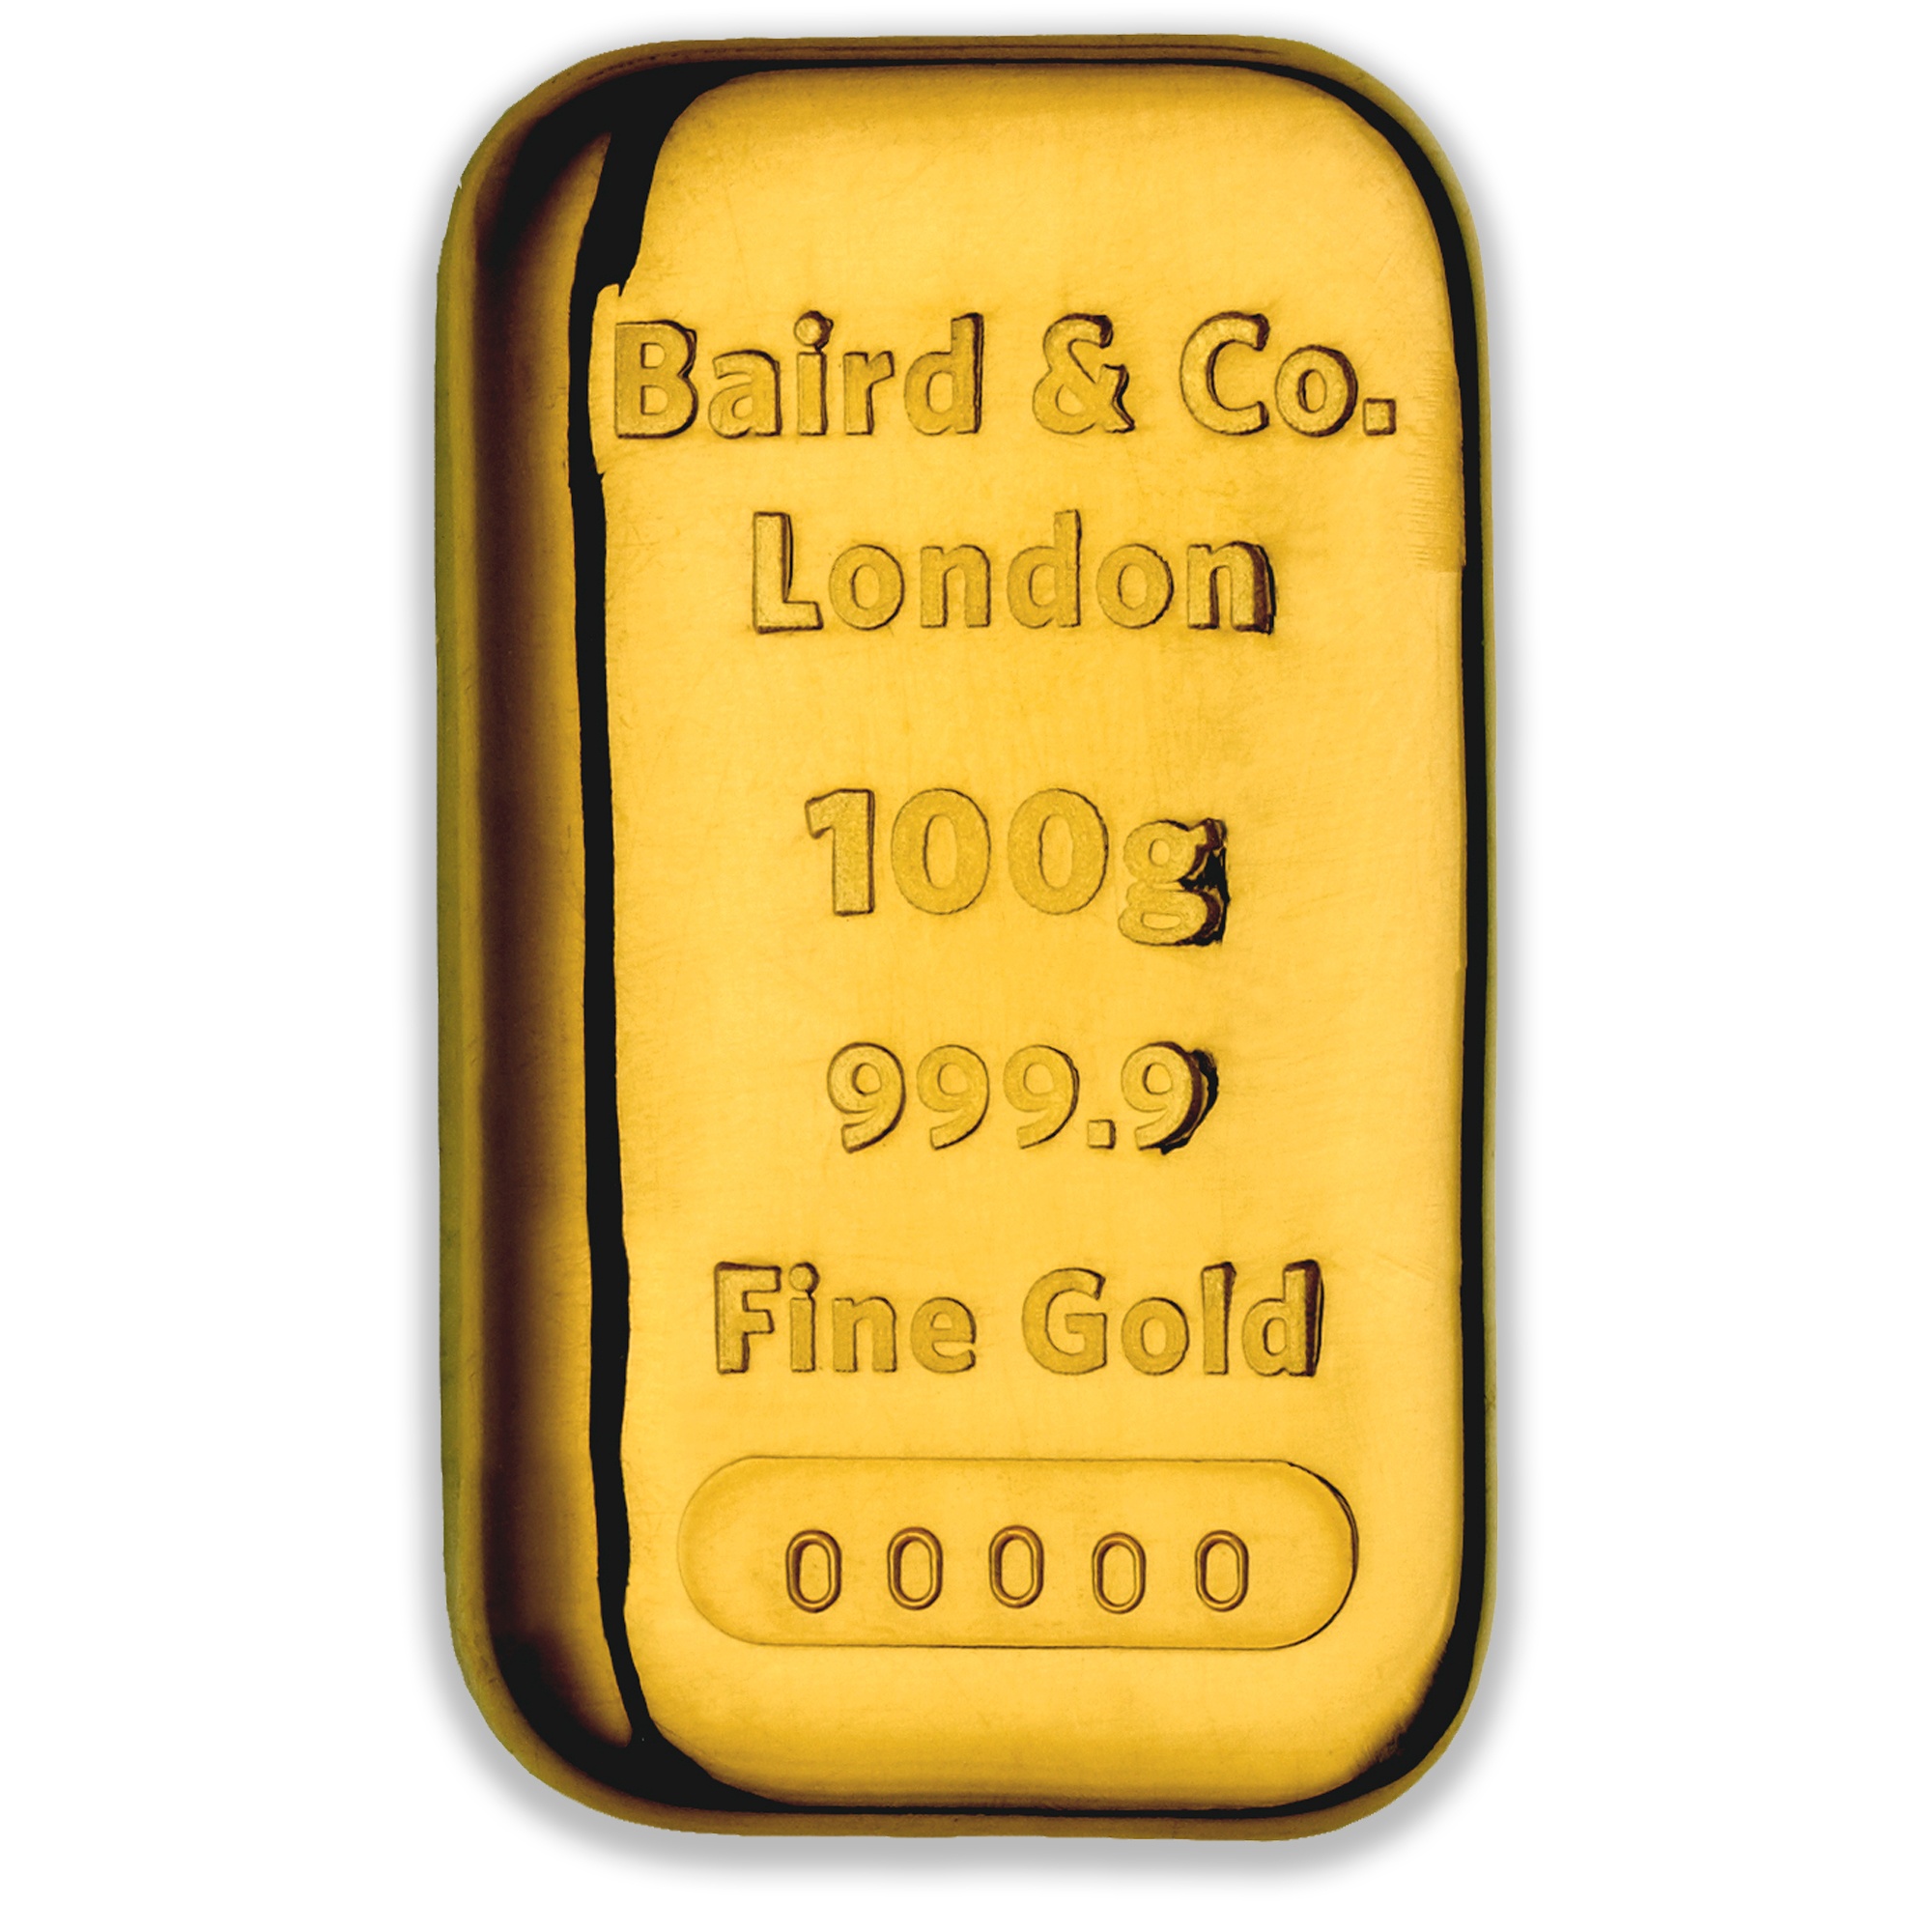 100g Baird & Co Gold Cast Bar